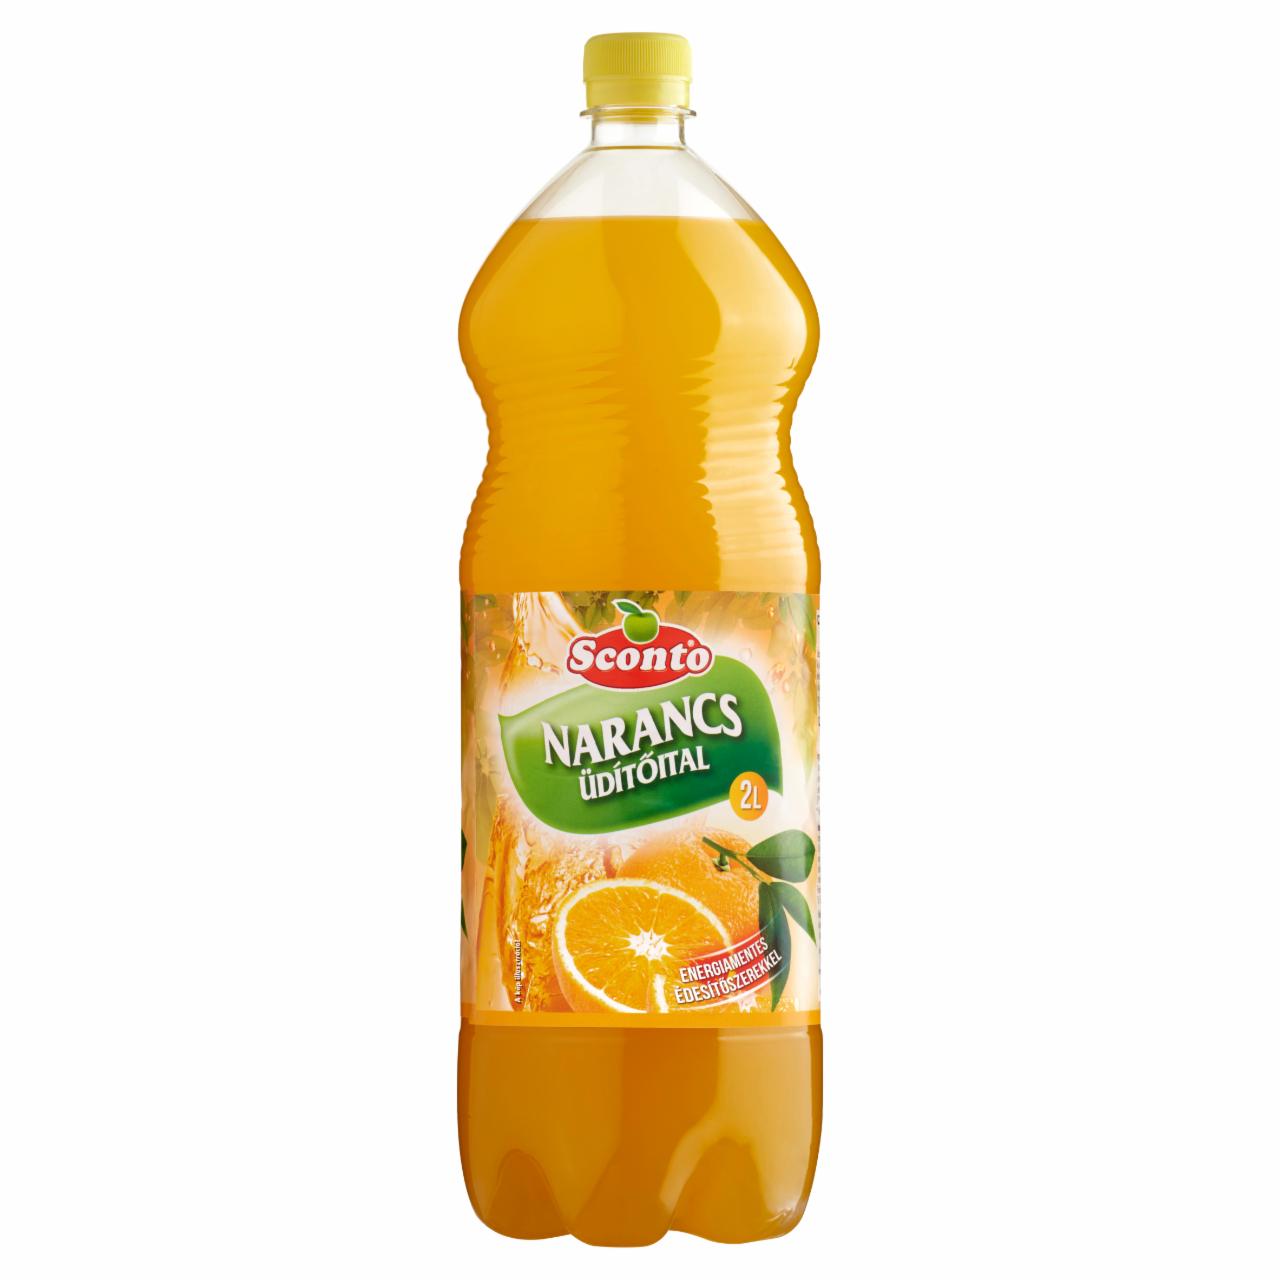 Képek - Sconto energiamentes narancs üdítőital édesítőszerekkel 2 l